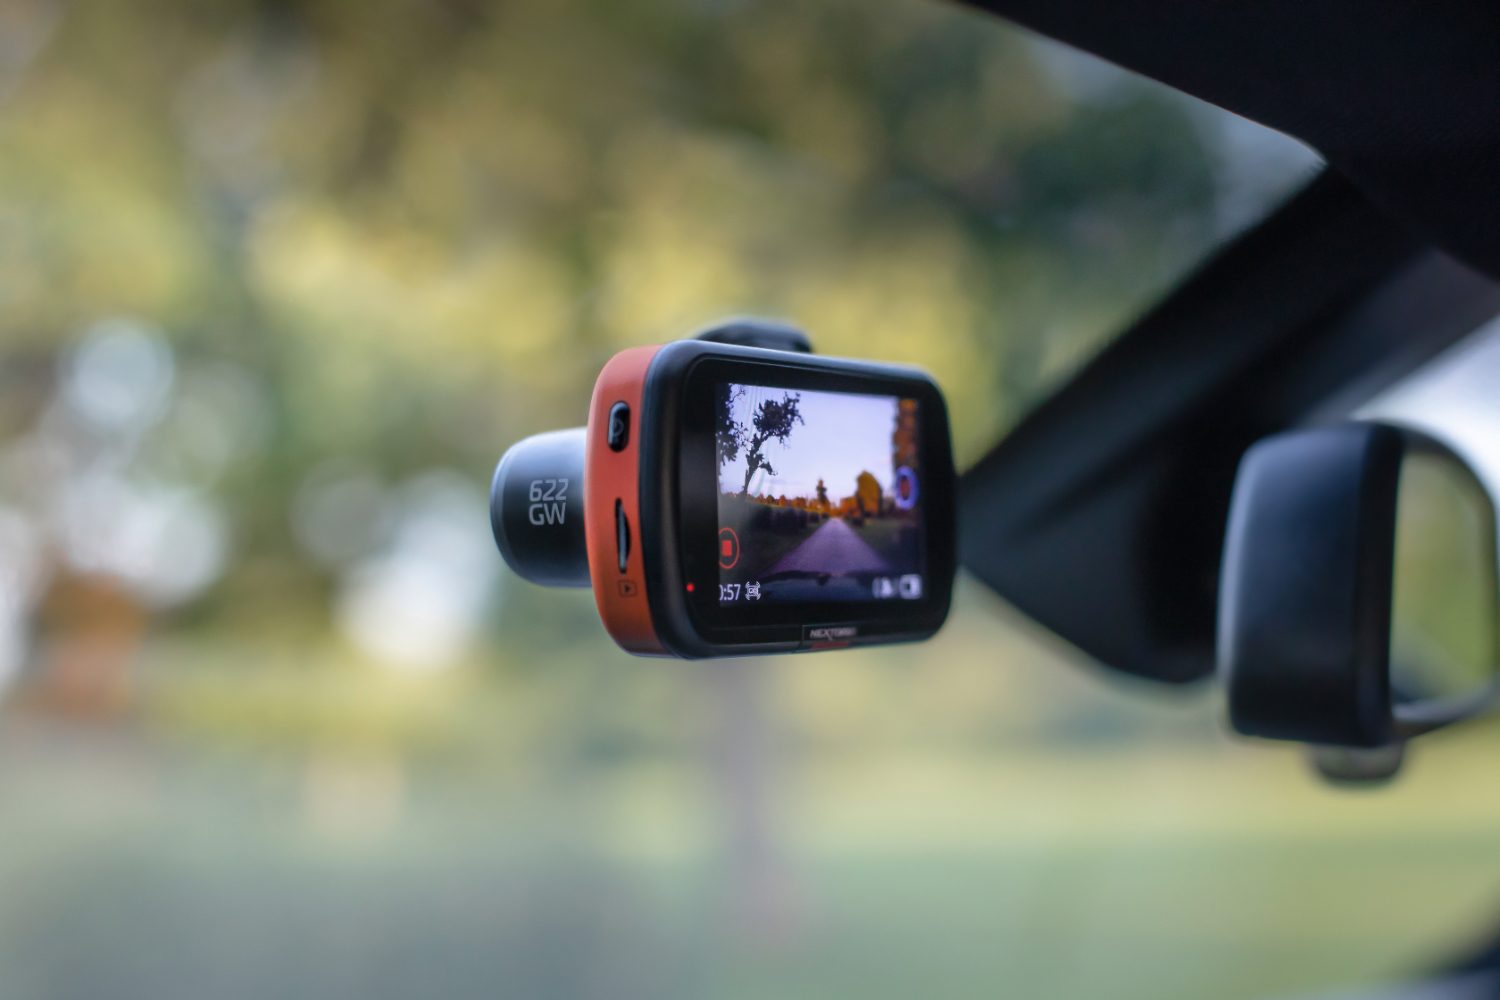 Caméra embarquée 4K Wifi pour voiture Mémoire Non-inclus